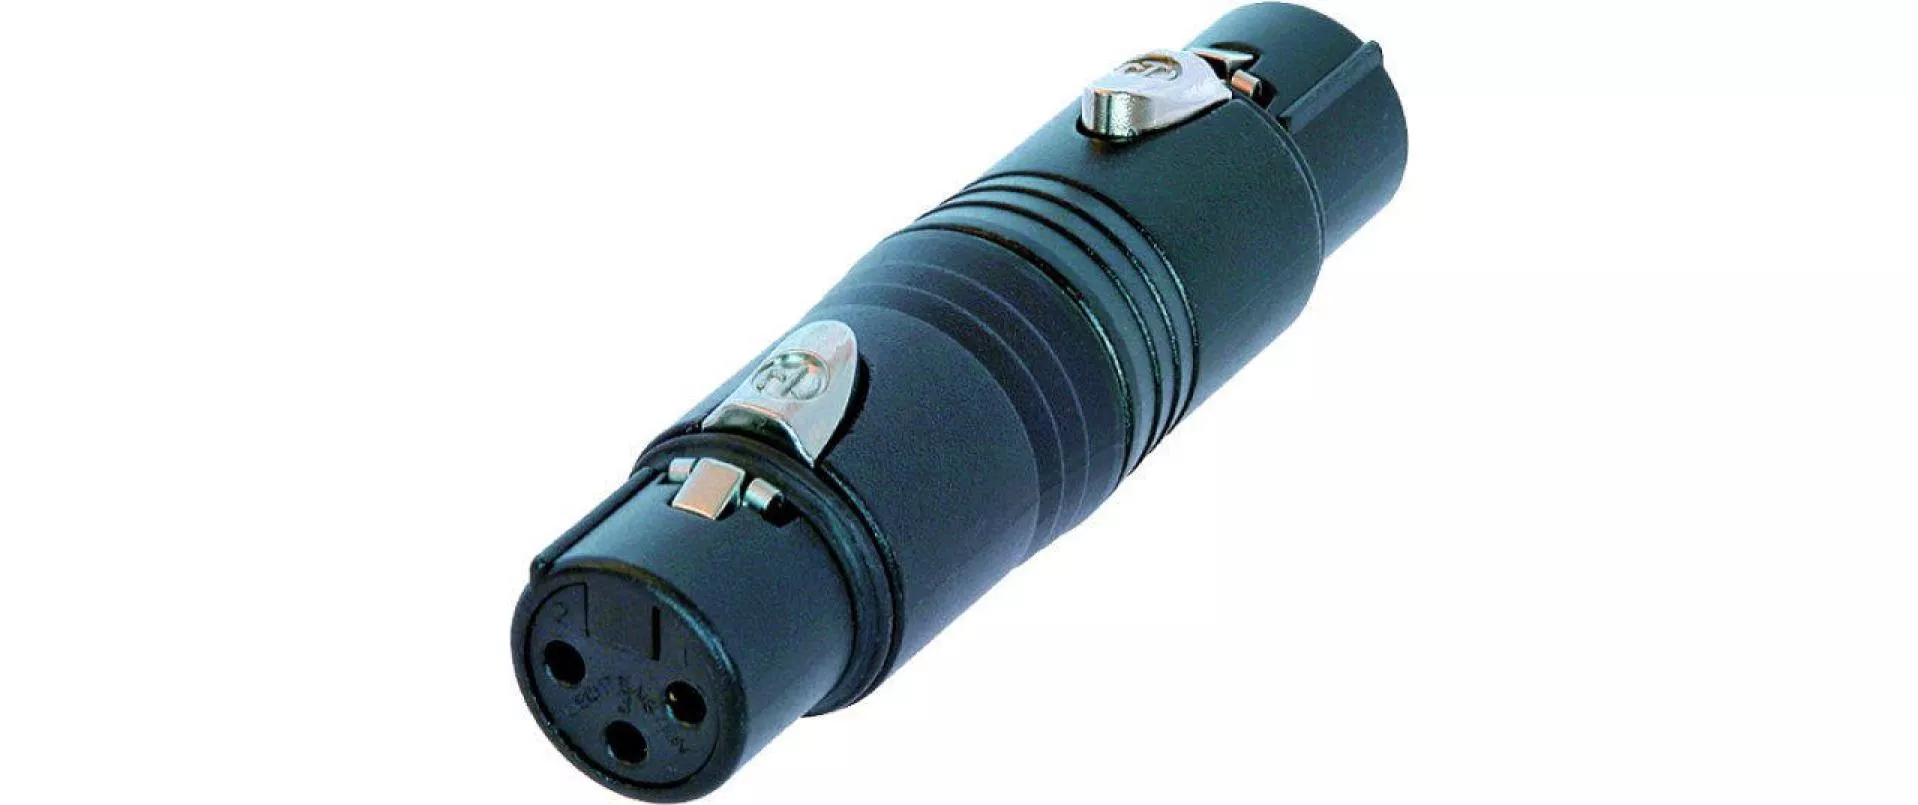 Audio-Adapter XLR 3 Pole, female - XLR 3 Pole, female